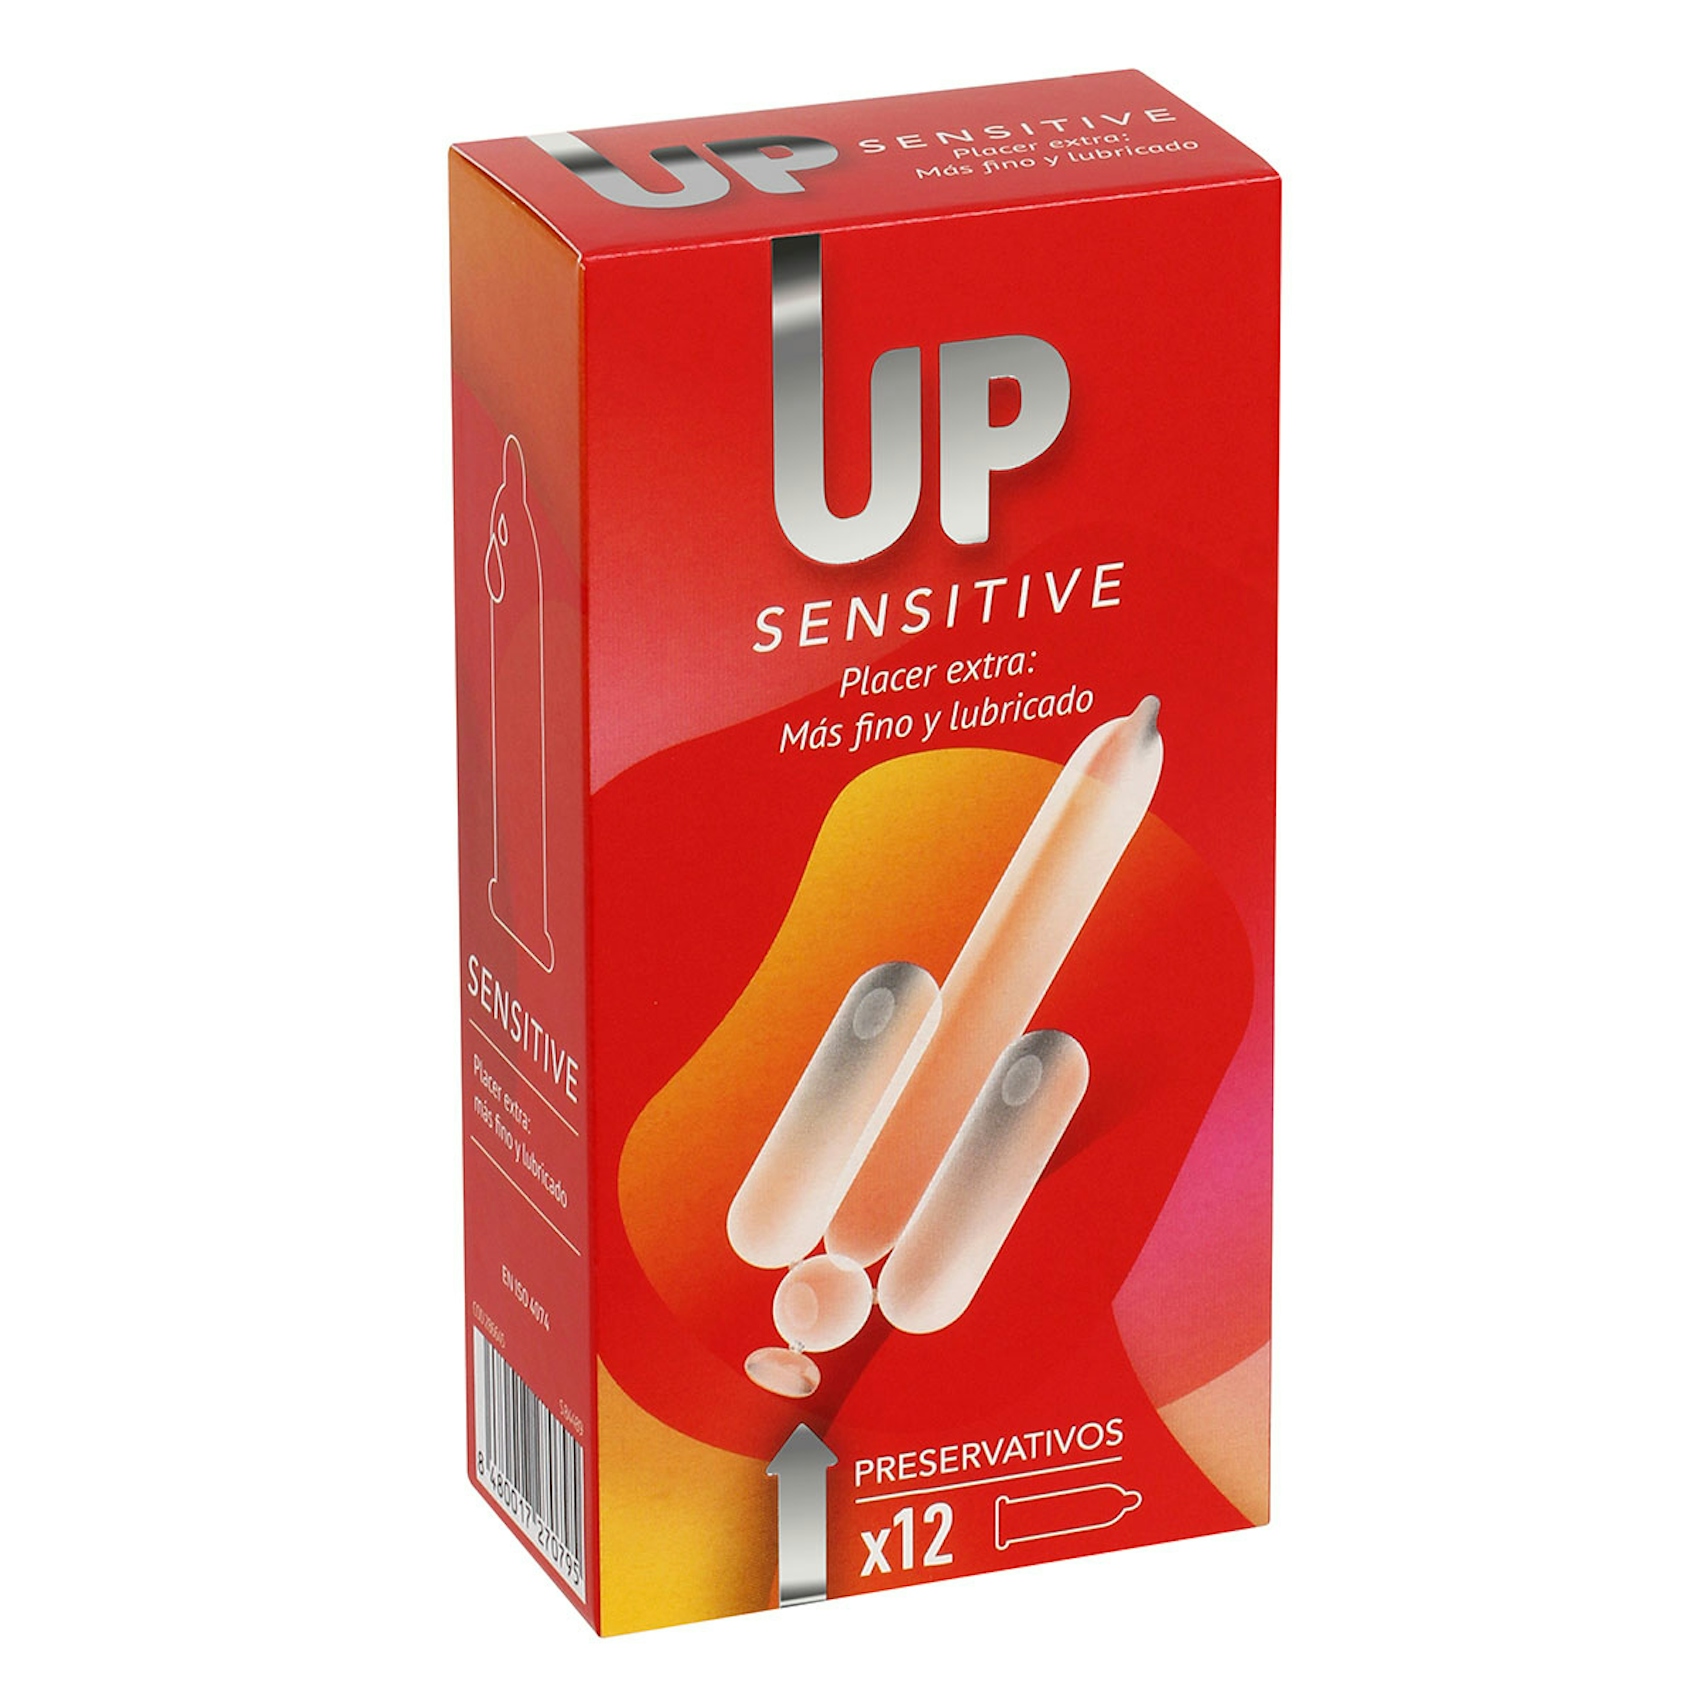 Preservativos Up Sensitive 12 uds